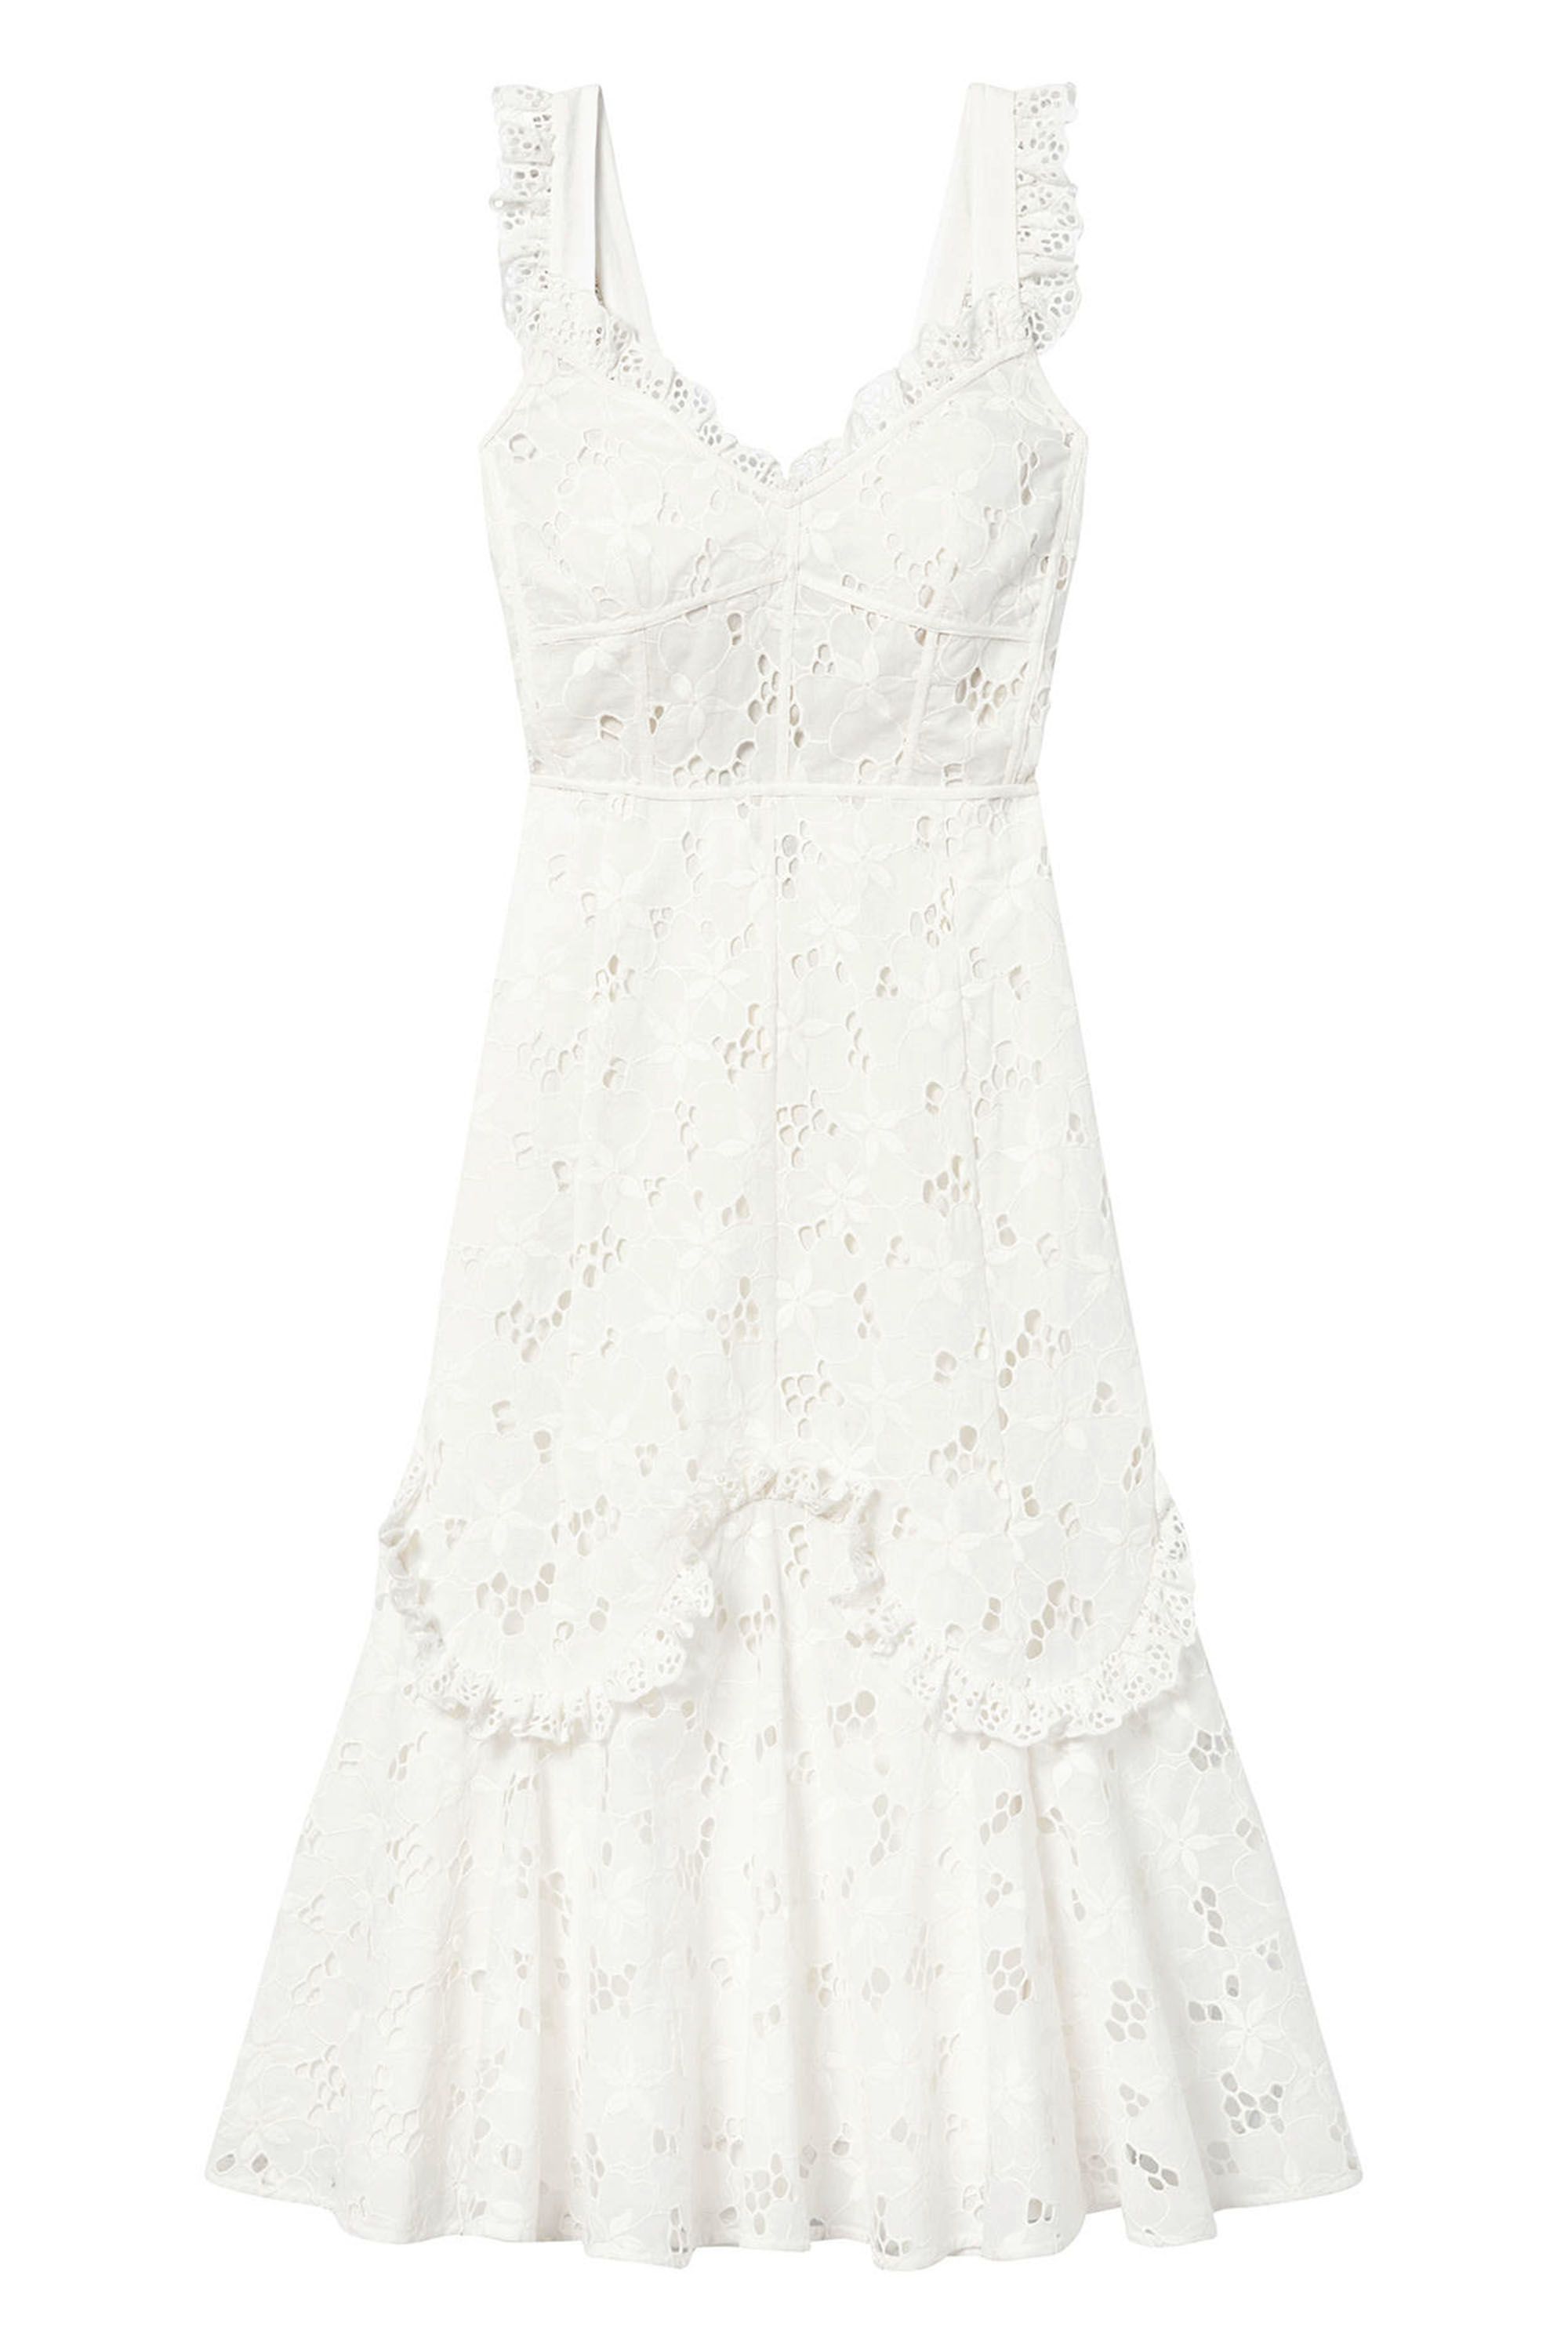 flirty white summer dresses